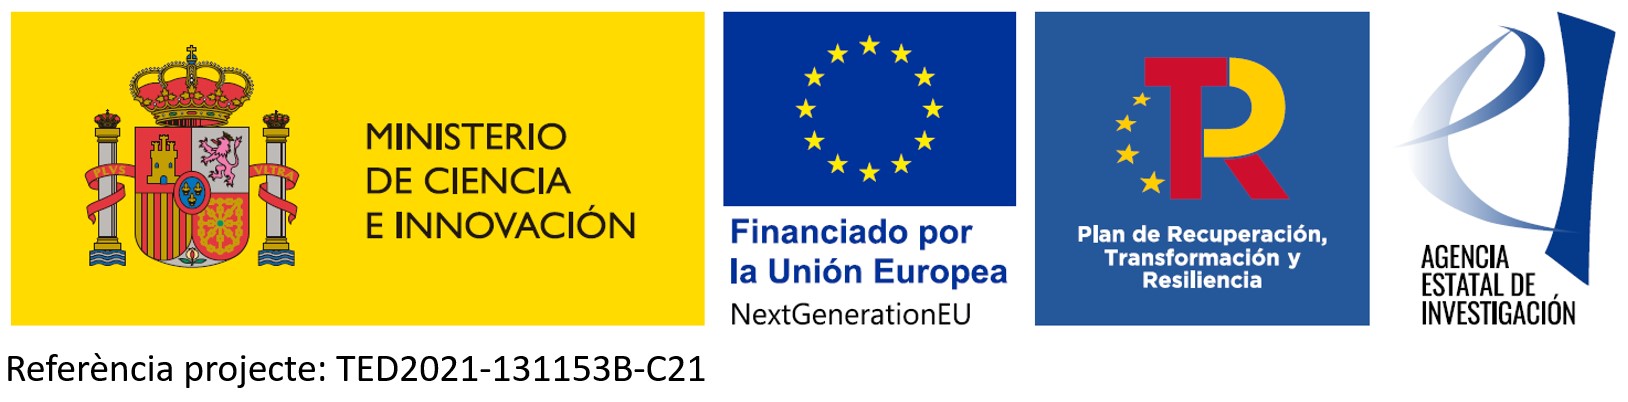 Ministerio de Ciencia e Innovación, Financiado por la Unión Europea NextGenerationEU Plan de Recuperación, Transformación y Resiliencia, Agencia Estatal de Investigación, Ref. projecte: TED2021-131153B-C21